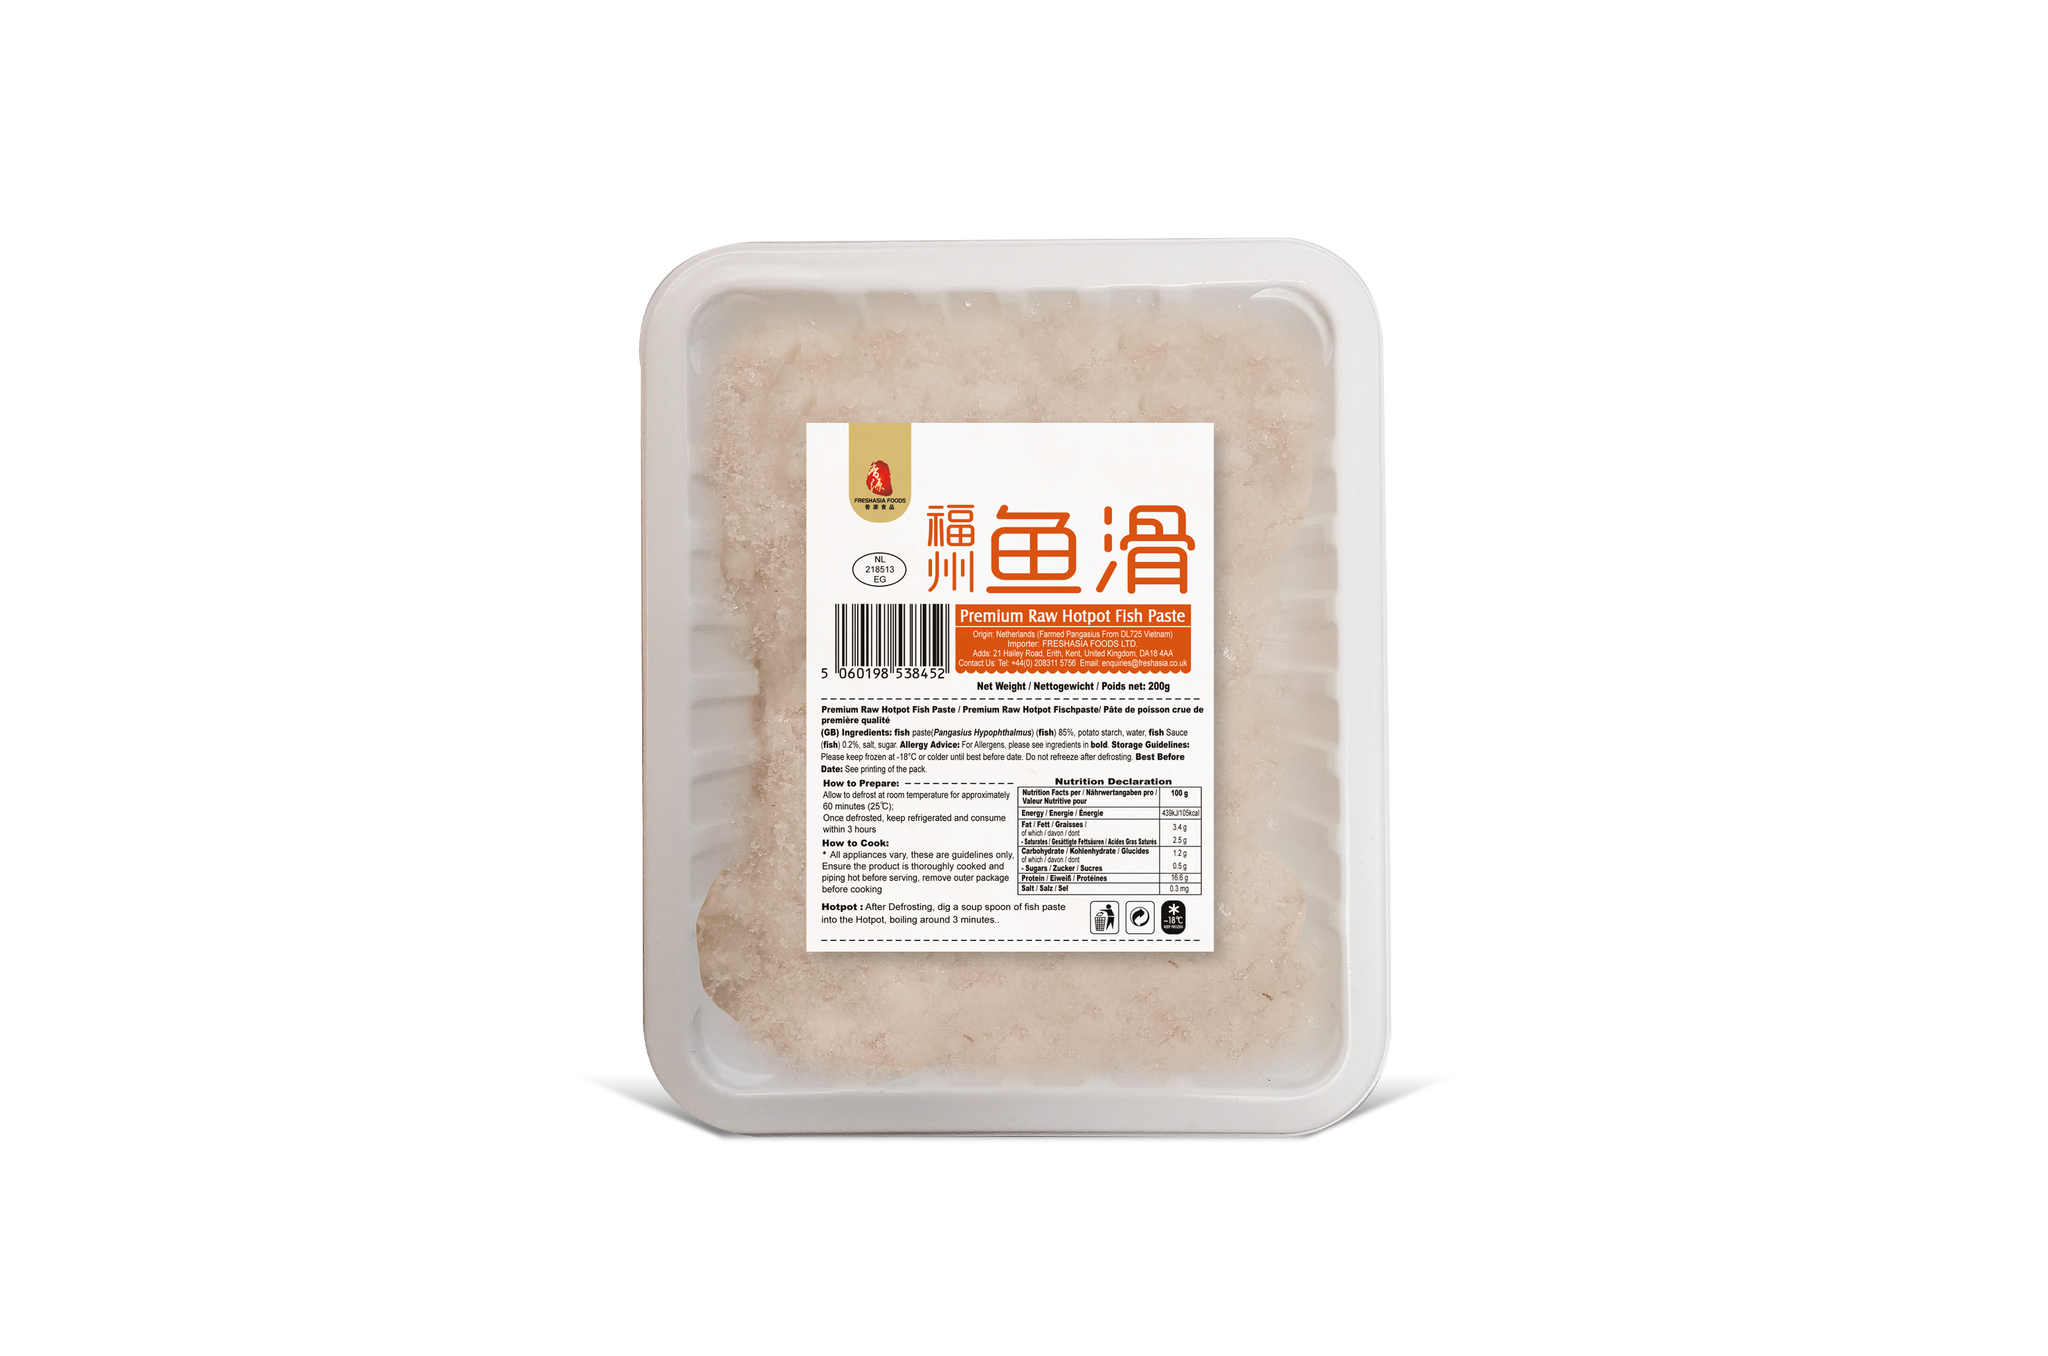 （可以邮寄啦！）冷冻香源福州鱼滑 F Premium Raw Hotpot Fish Paste